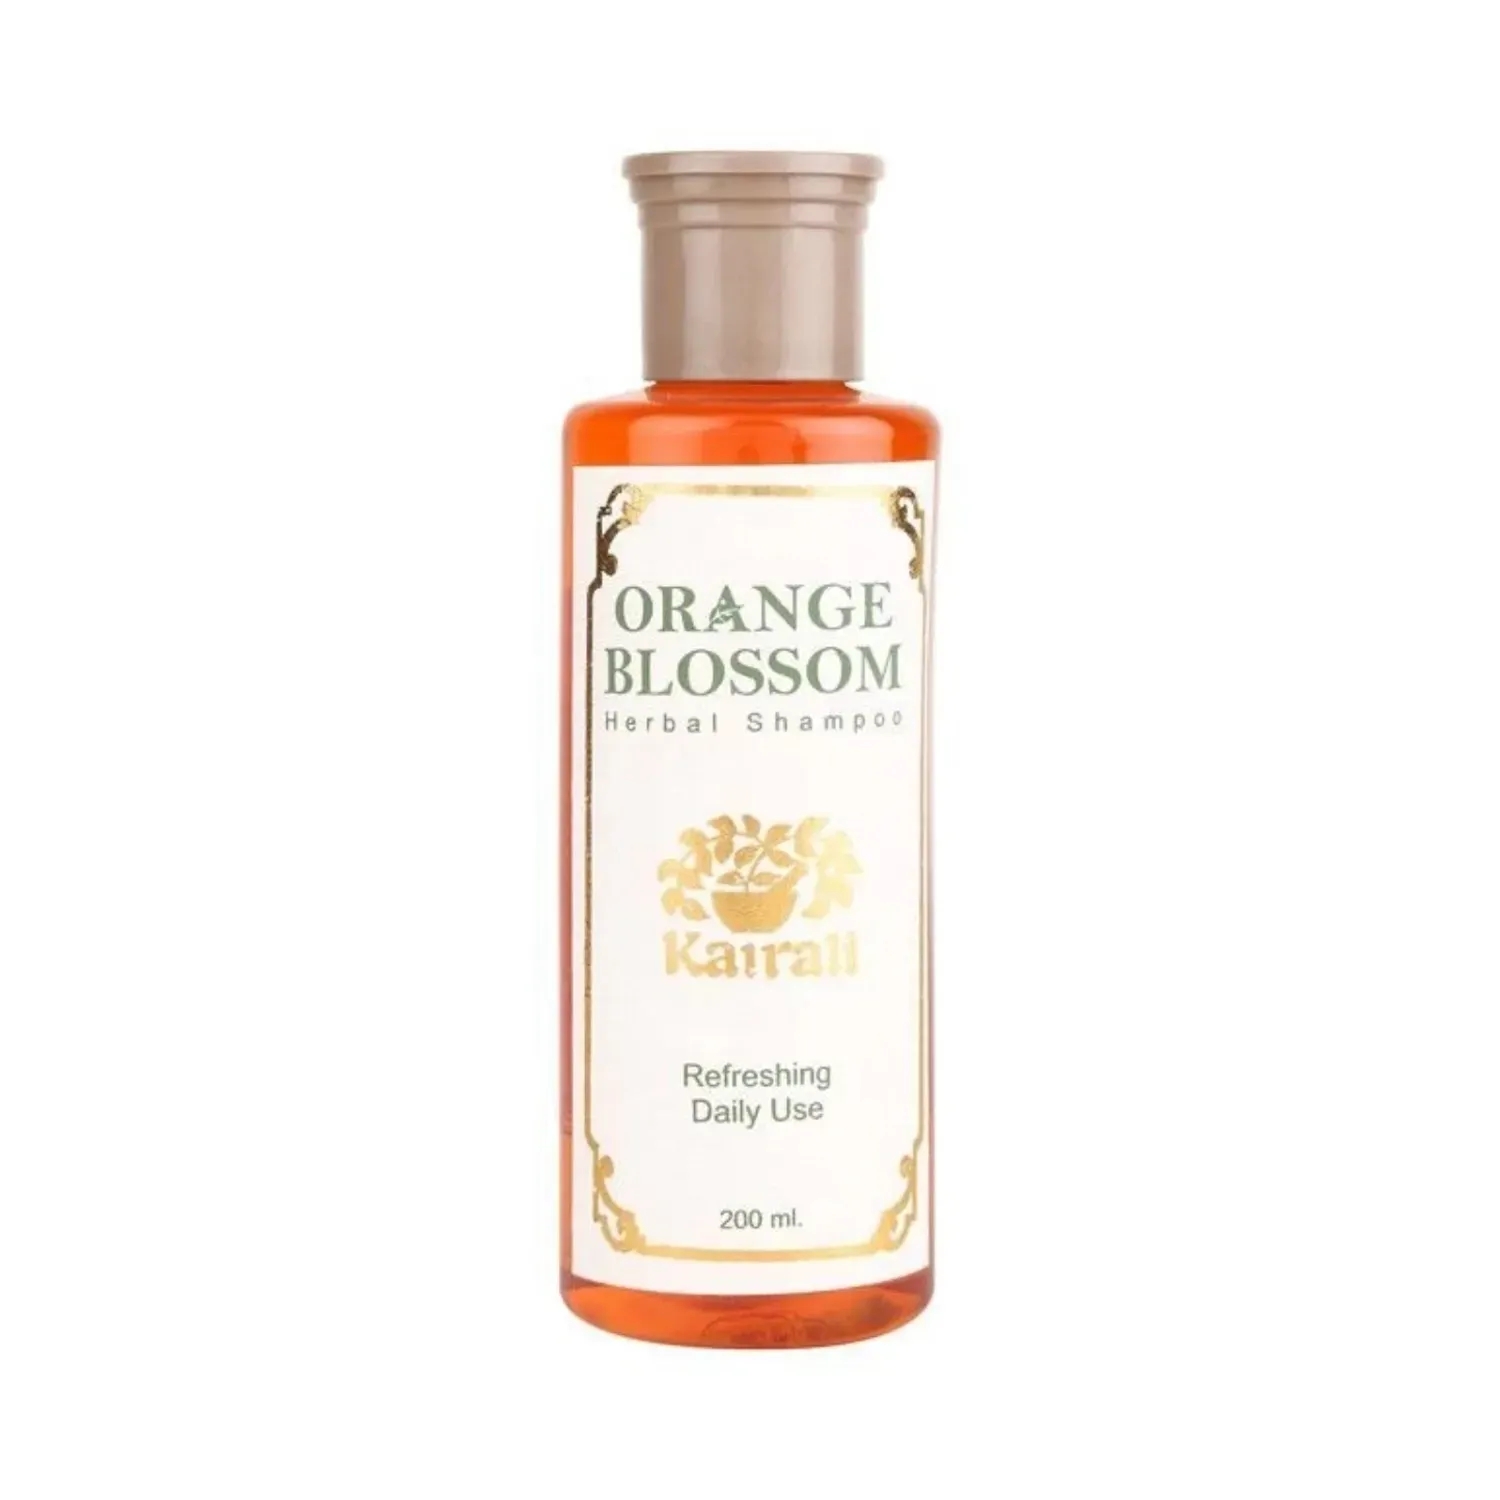 Kairali | Kairali Orange Blossom Shampoo (200ml)